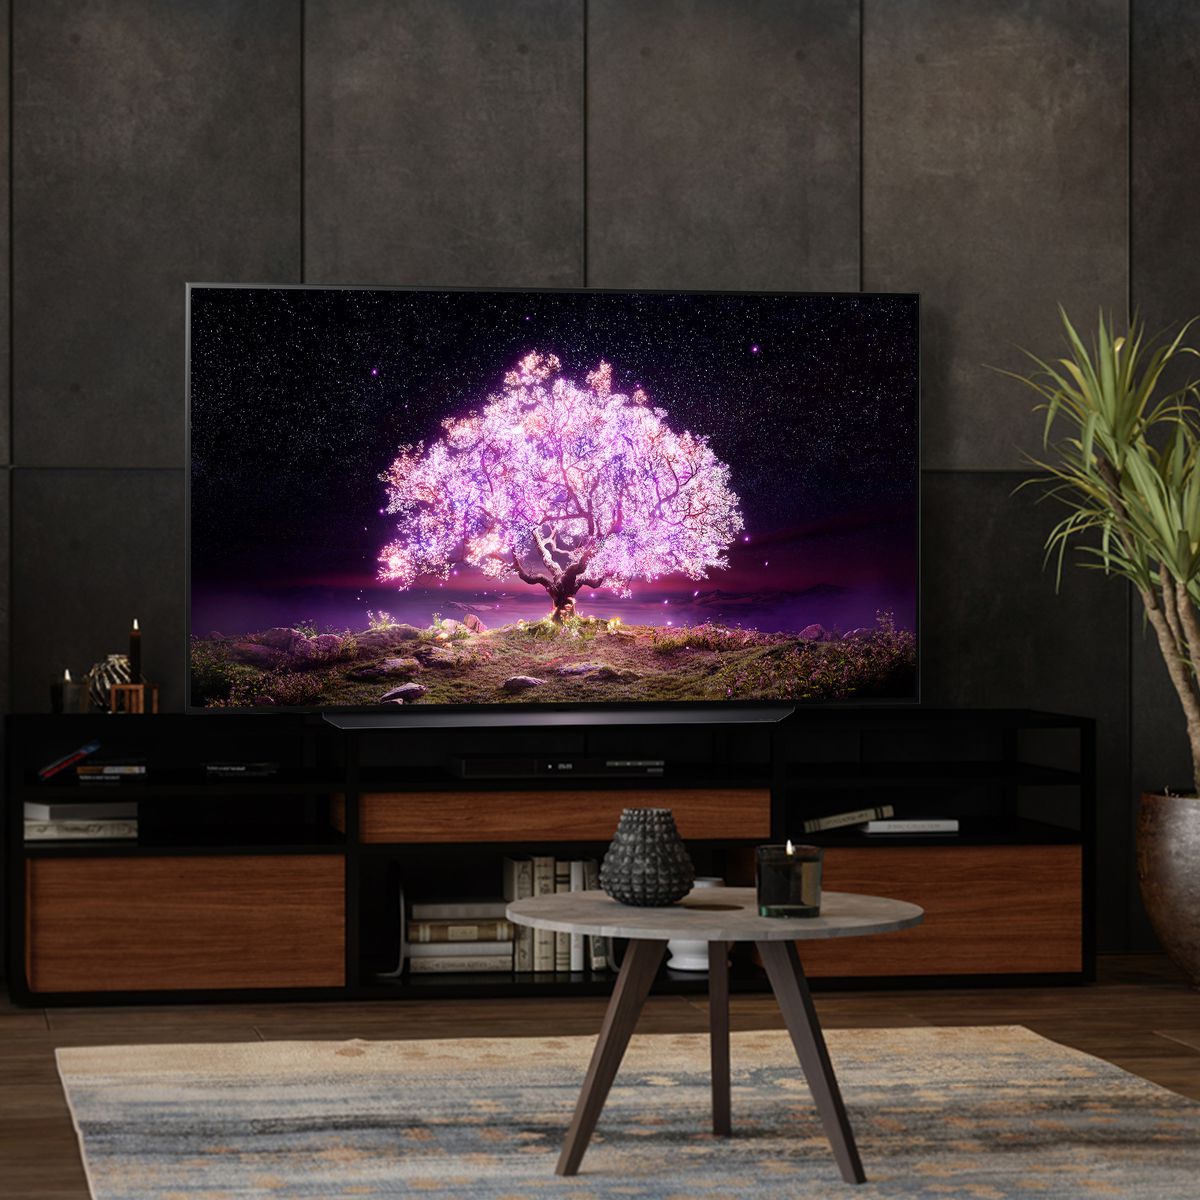 Şimdiye kadarki en düşük fiyata 48 inç LG C1 OLED TV alabilirsiniz